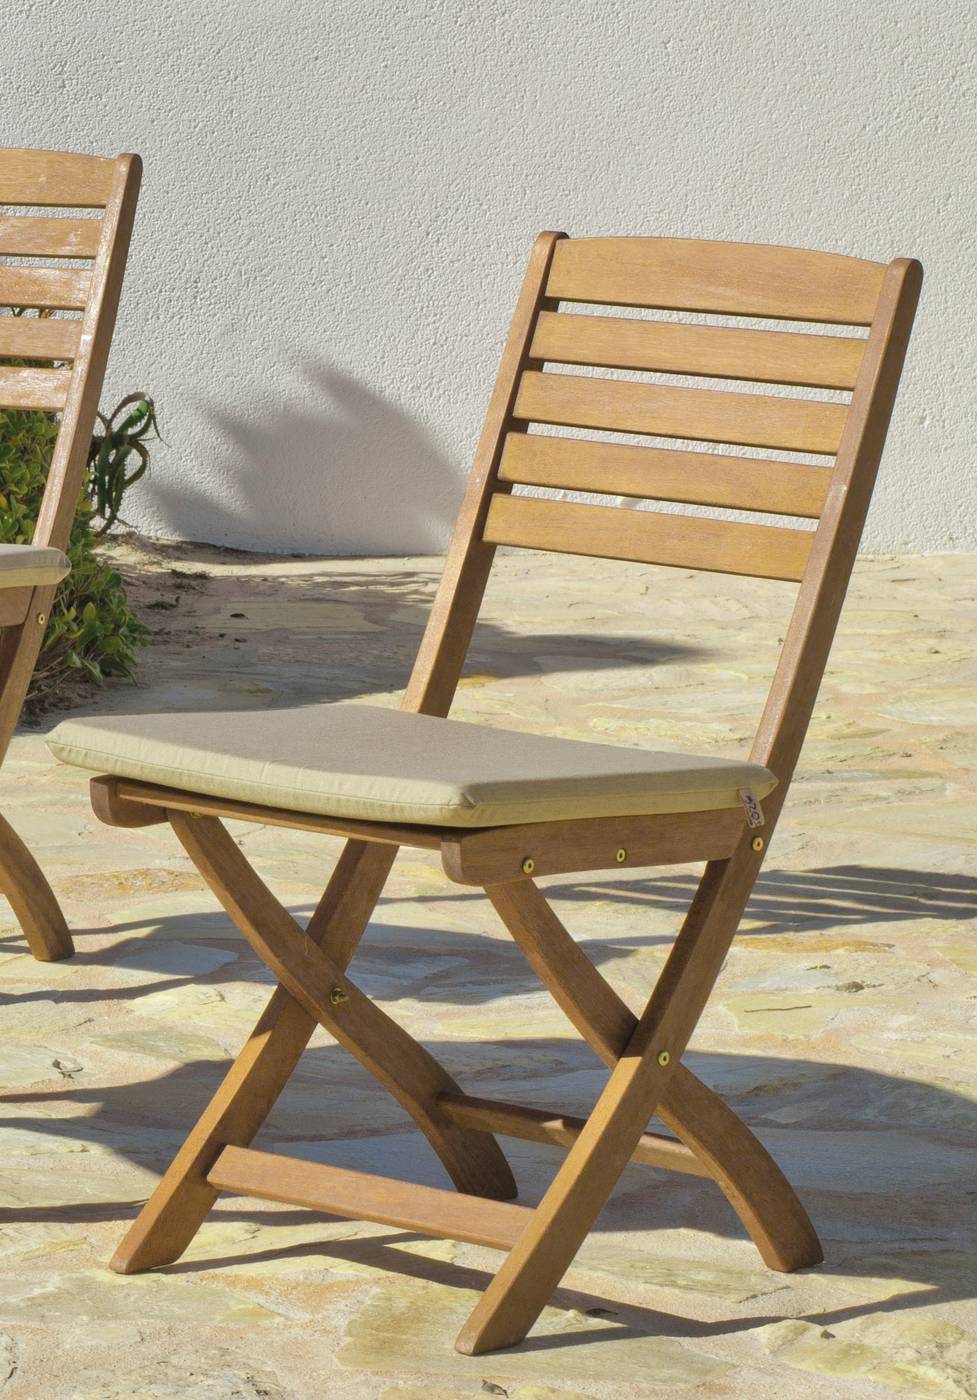 Set Madera Berna-Melrose - Conjunto de madera y acero forjado: 1 mesa mosaico 90Ø + 4 sillas plegables de madera + 4 cojines completos